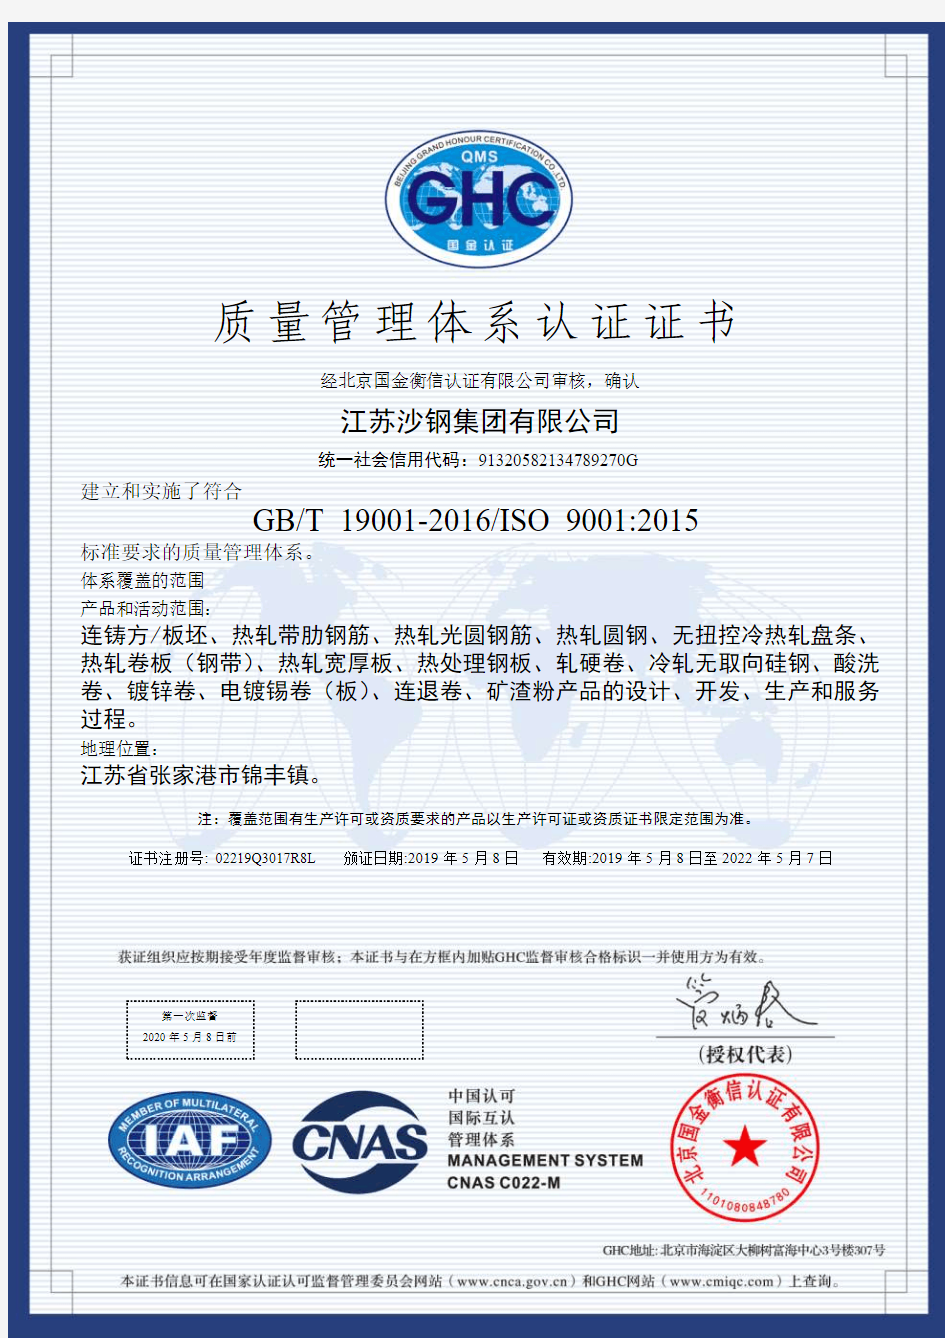 质量管理体系认证证书-sha